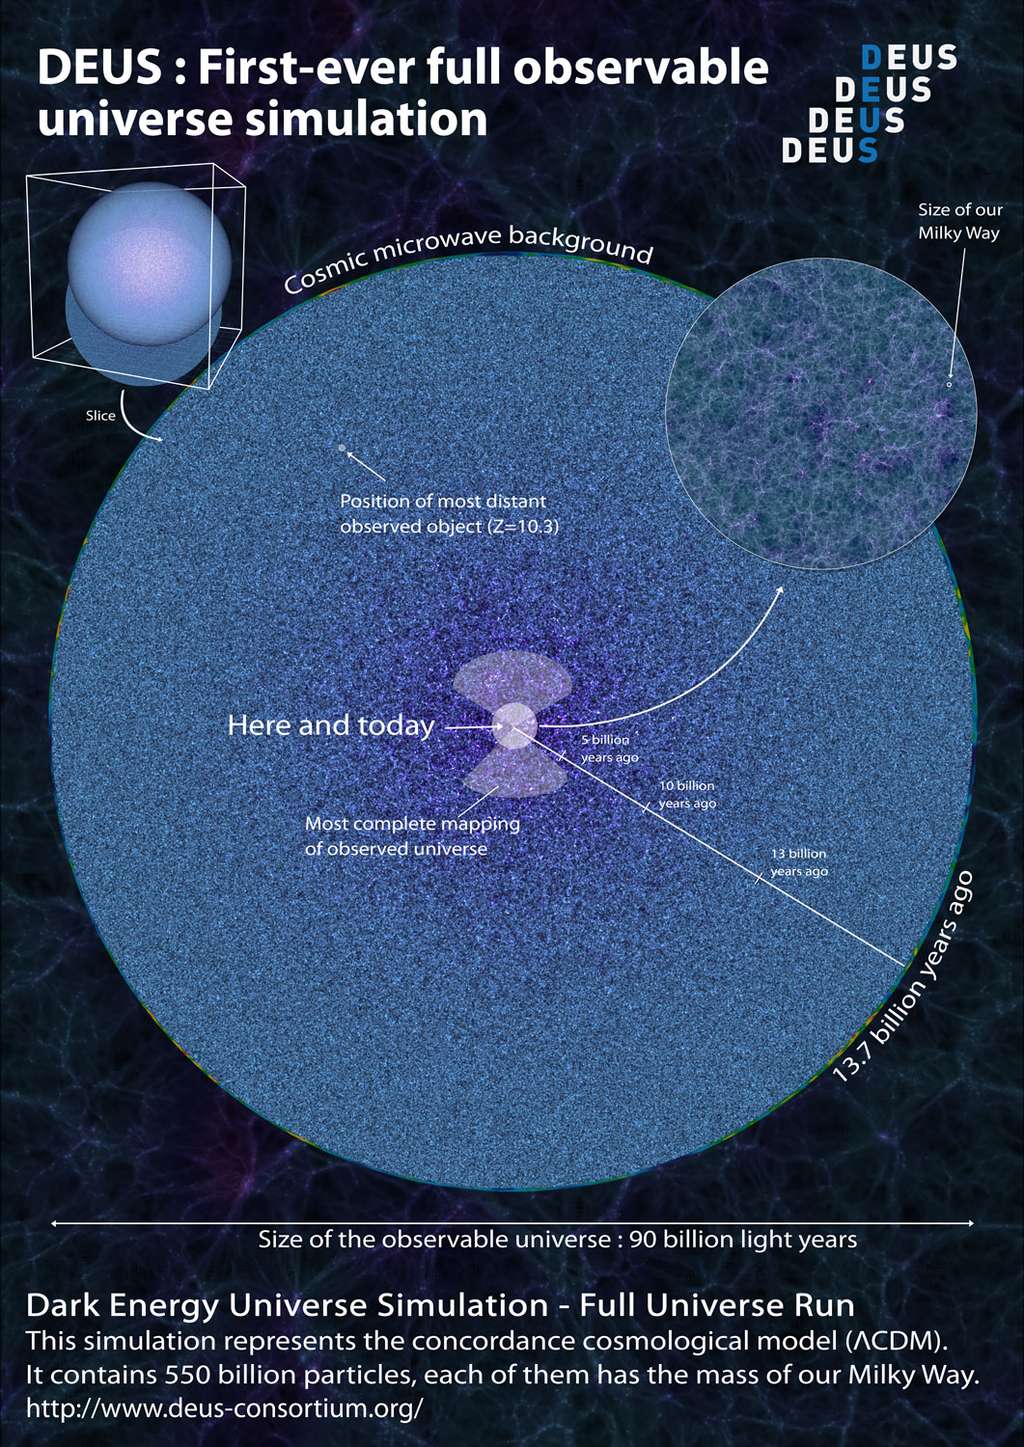 Volume de l'univers accessible avec la dernière simulation de DEUS, c'est-à-dire tout l'Univers observable de 90 milliards d'années-lumière de diamètre. En haut à gauche, la sphère céleste totale, dont on a extrait une coupe (<em>slice</em>), représentée par le grand disque. À sa périphérie se trouve le fond cosmologique (<em>Cosmic microwave background</em>) observé depuis la Terre, c'est-à-dire les régions dont sont partis les plus vieux photons du cosmos il y a 13,7 milliards d'années. Au centre, les deux cônes représentent le domaine d'univers observé aujourd'hui, et que l'on peut voir dans la vidéo précédente. En haut à droite, un zoom montre la région entourant notre Galaxie, avec l'échelle de la Voie lactée (milky way). © DEUS consortium